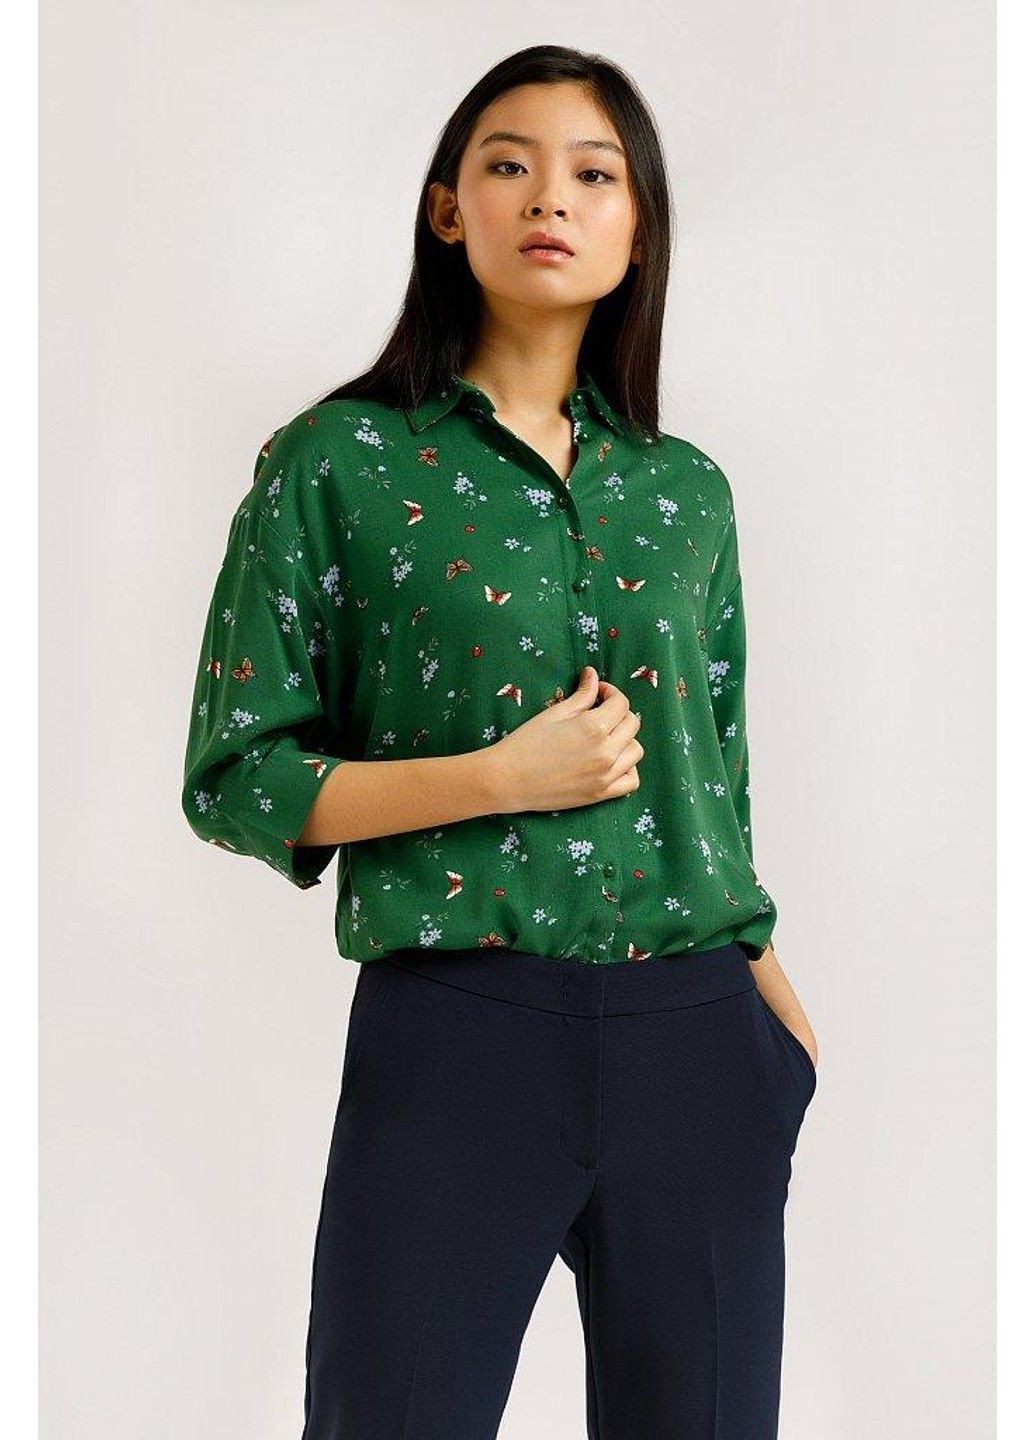 Зеленая летняя блузка b20-12054-500 Finn Flare